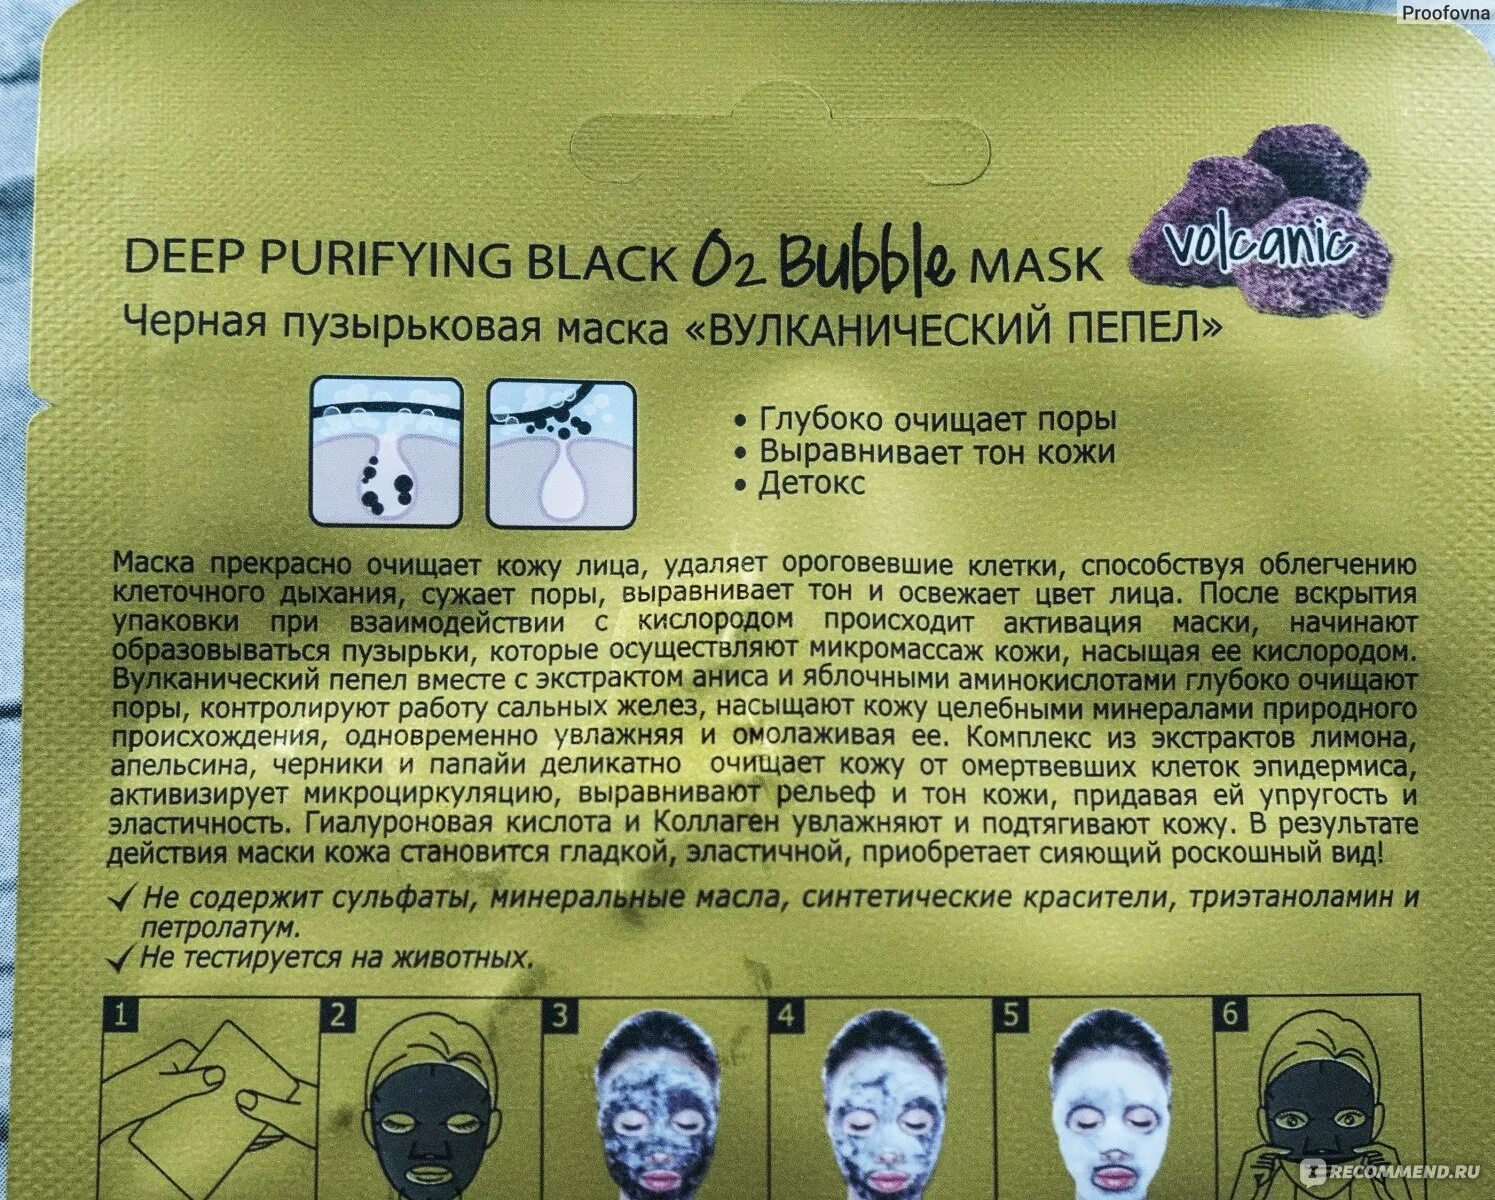 Скинлайт маска для лица. Черная пузырьковая маска вулканический пепел. Фани Органик маска для лицаскинлайт маска черная пухырьковая. El'Skin маски для лица.